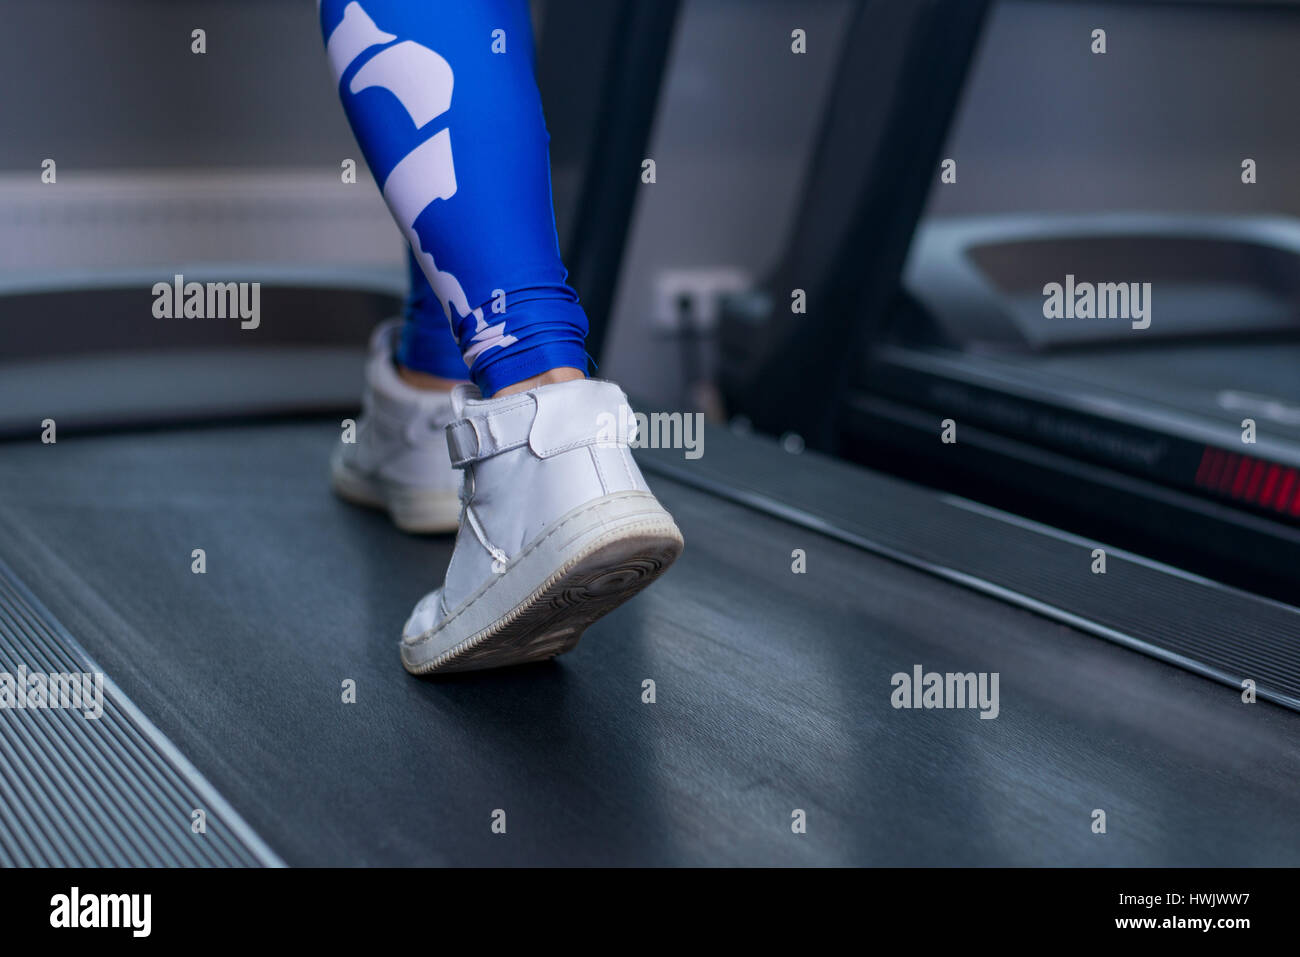 Femme jambes musclées sur tapis roulant dans le sport de sport. Notion d'exercice, fitness et d'un style de vie sain Banque D'Images